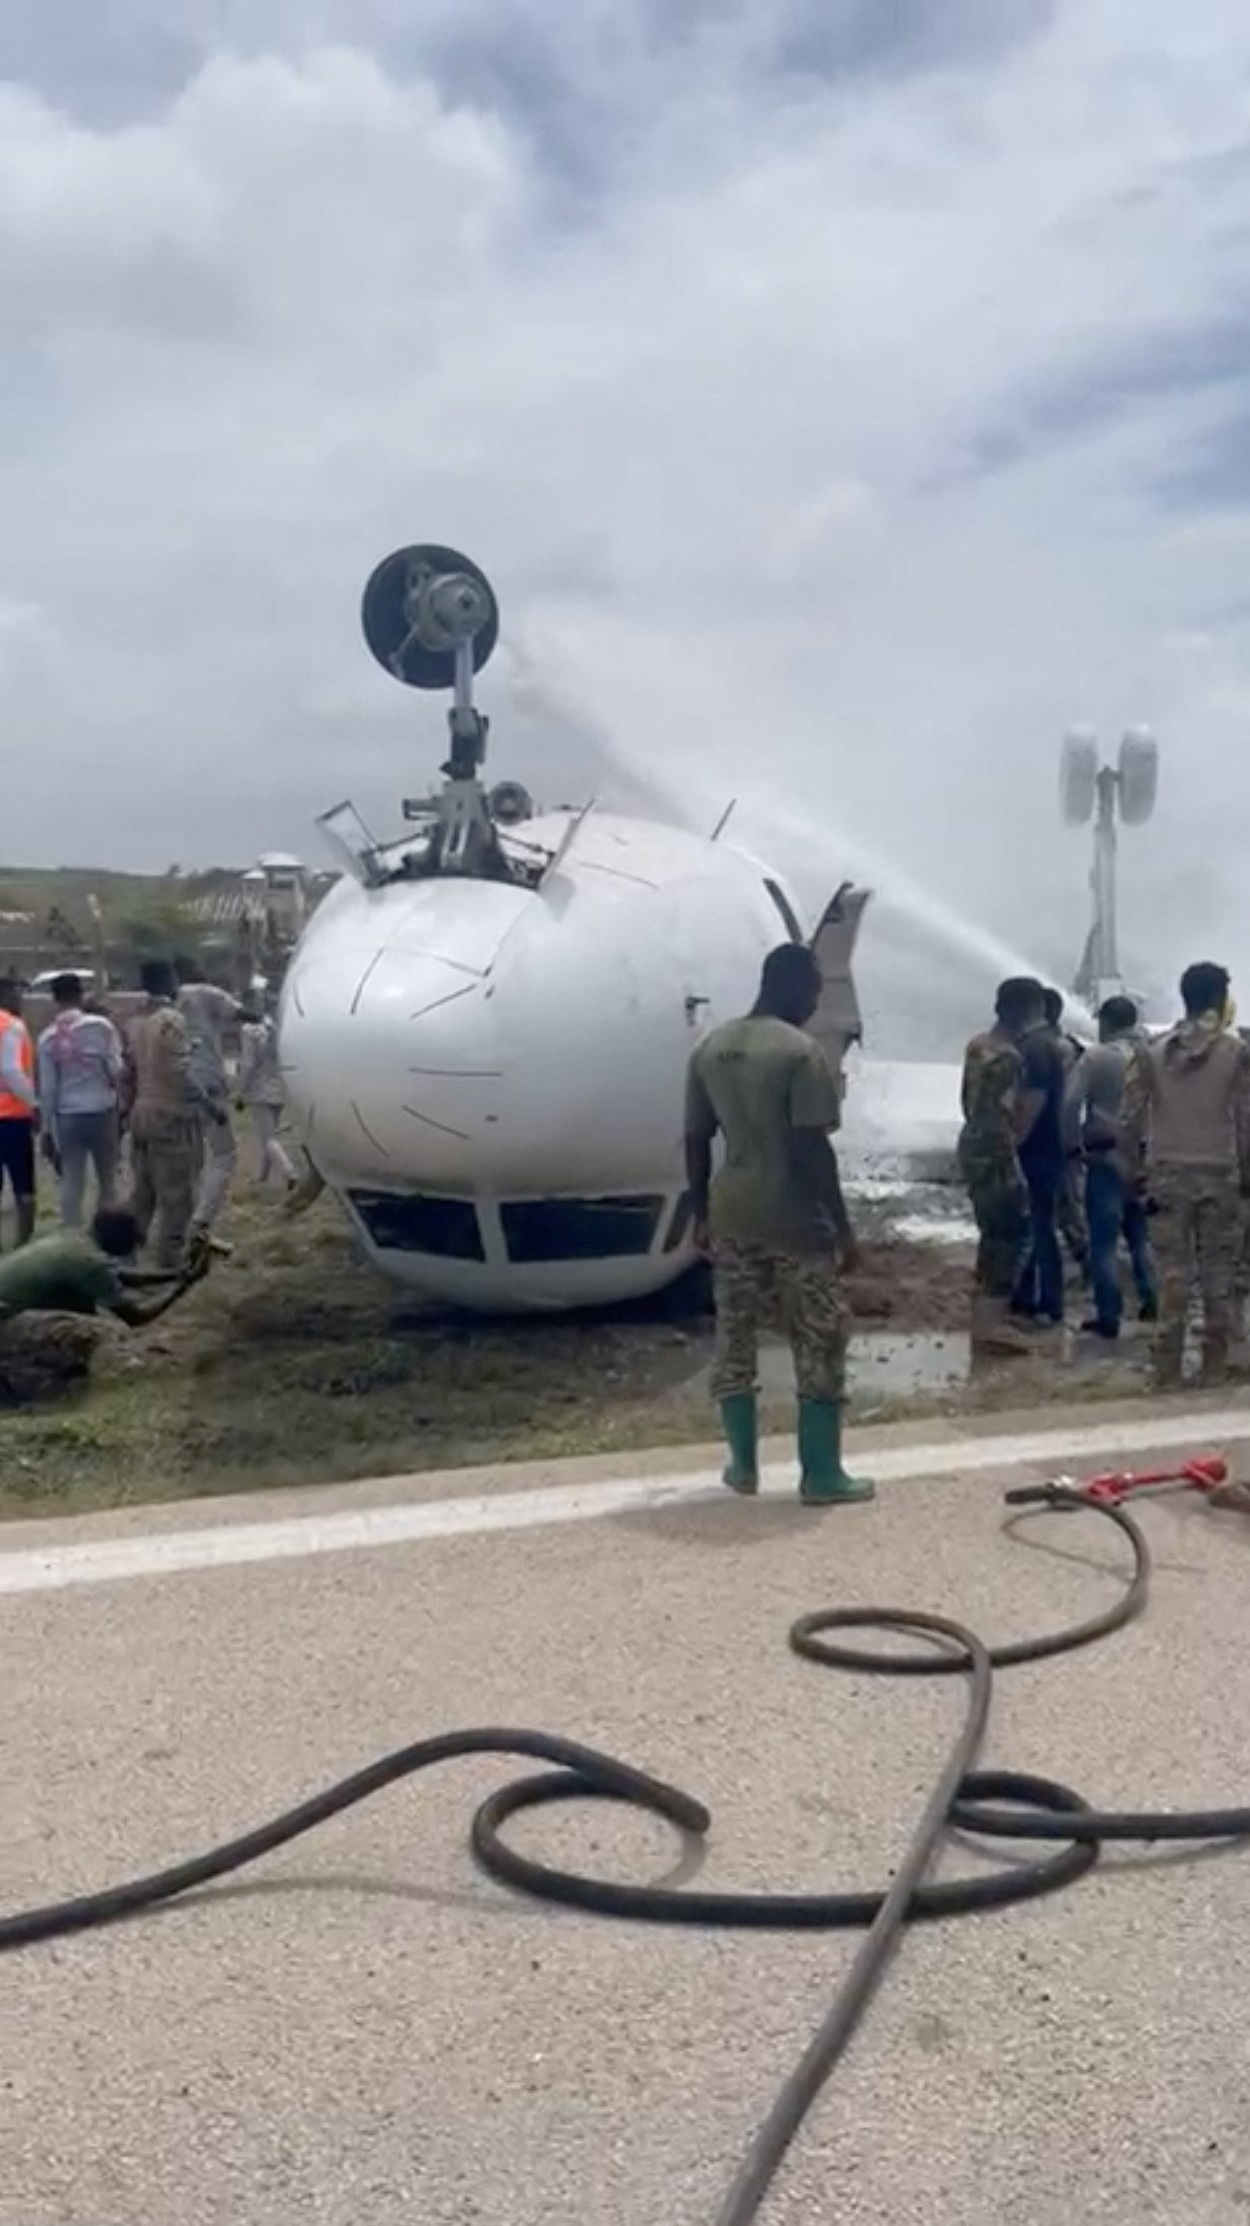 Pompierii stropesc apă pe un avion care s-a răsturnat după o aterizare accidentală, în Mogadiscio